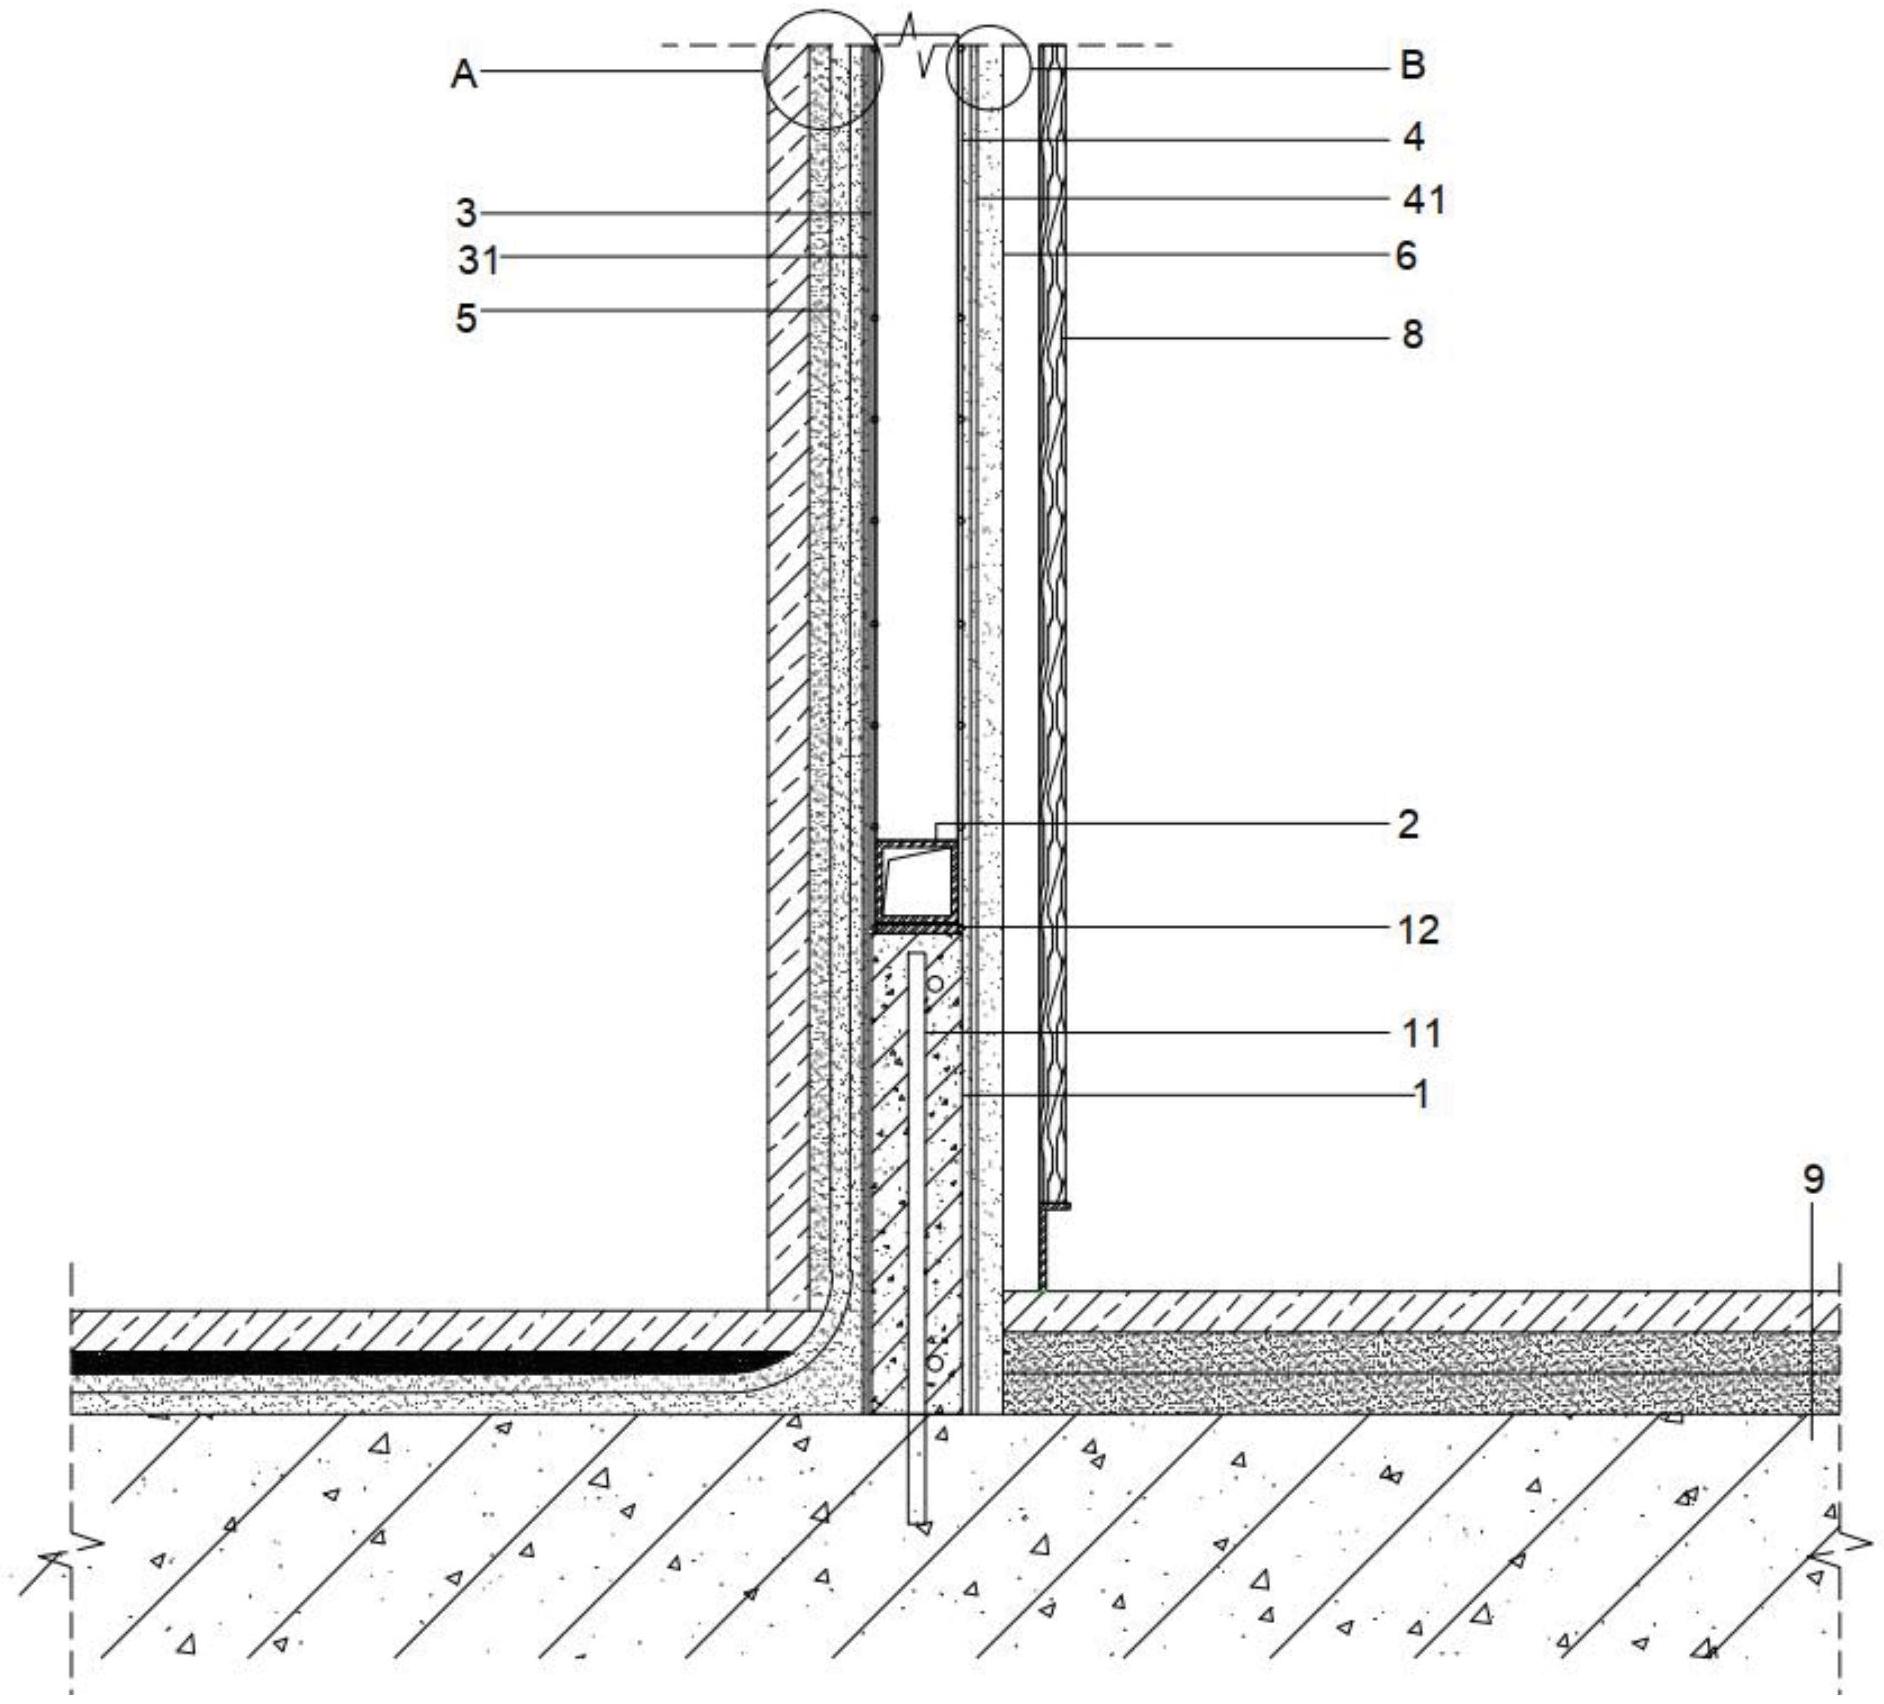 了一种超薄卫生间隔墙结构,其包括隔墙基层,隔墙基层上设置有钢骨架